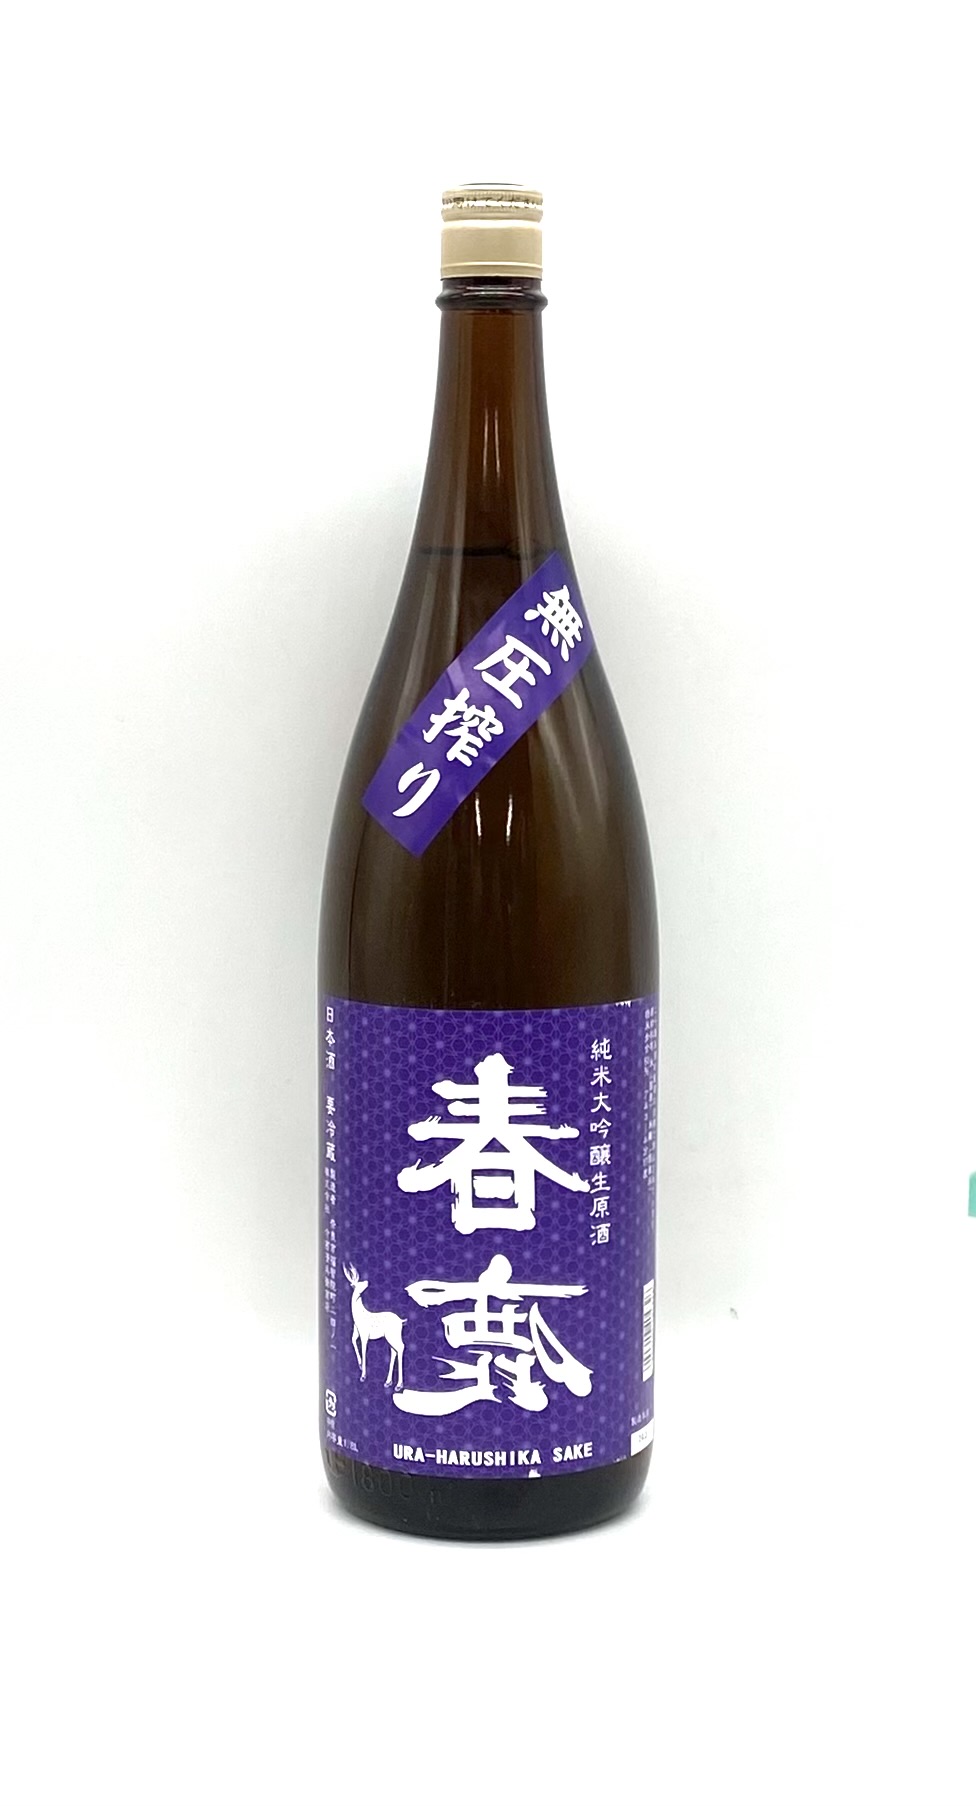 ドン ペリニヨン 2013 750ml | 酒のいろは | 日本酒・焼酎・ワイン 